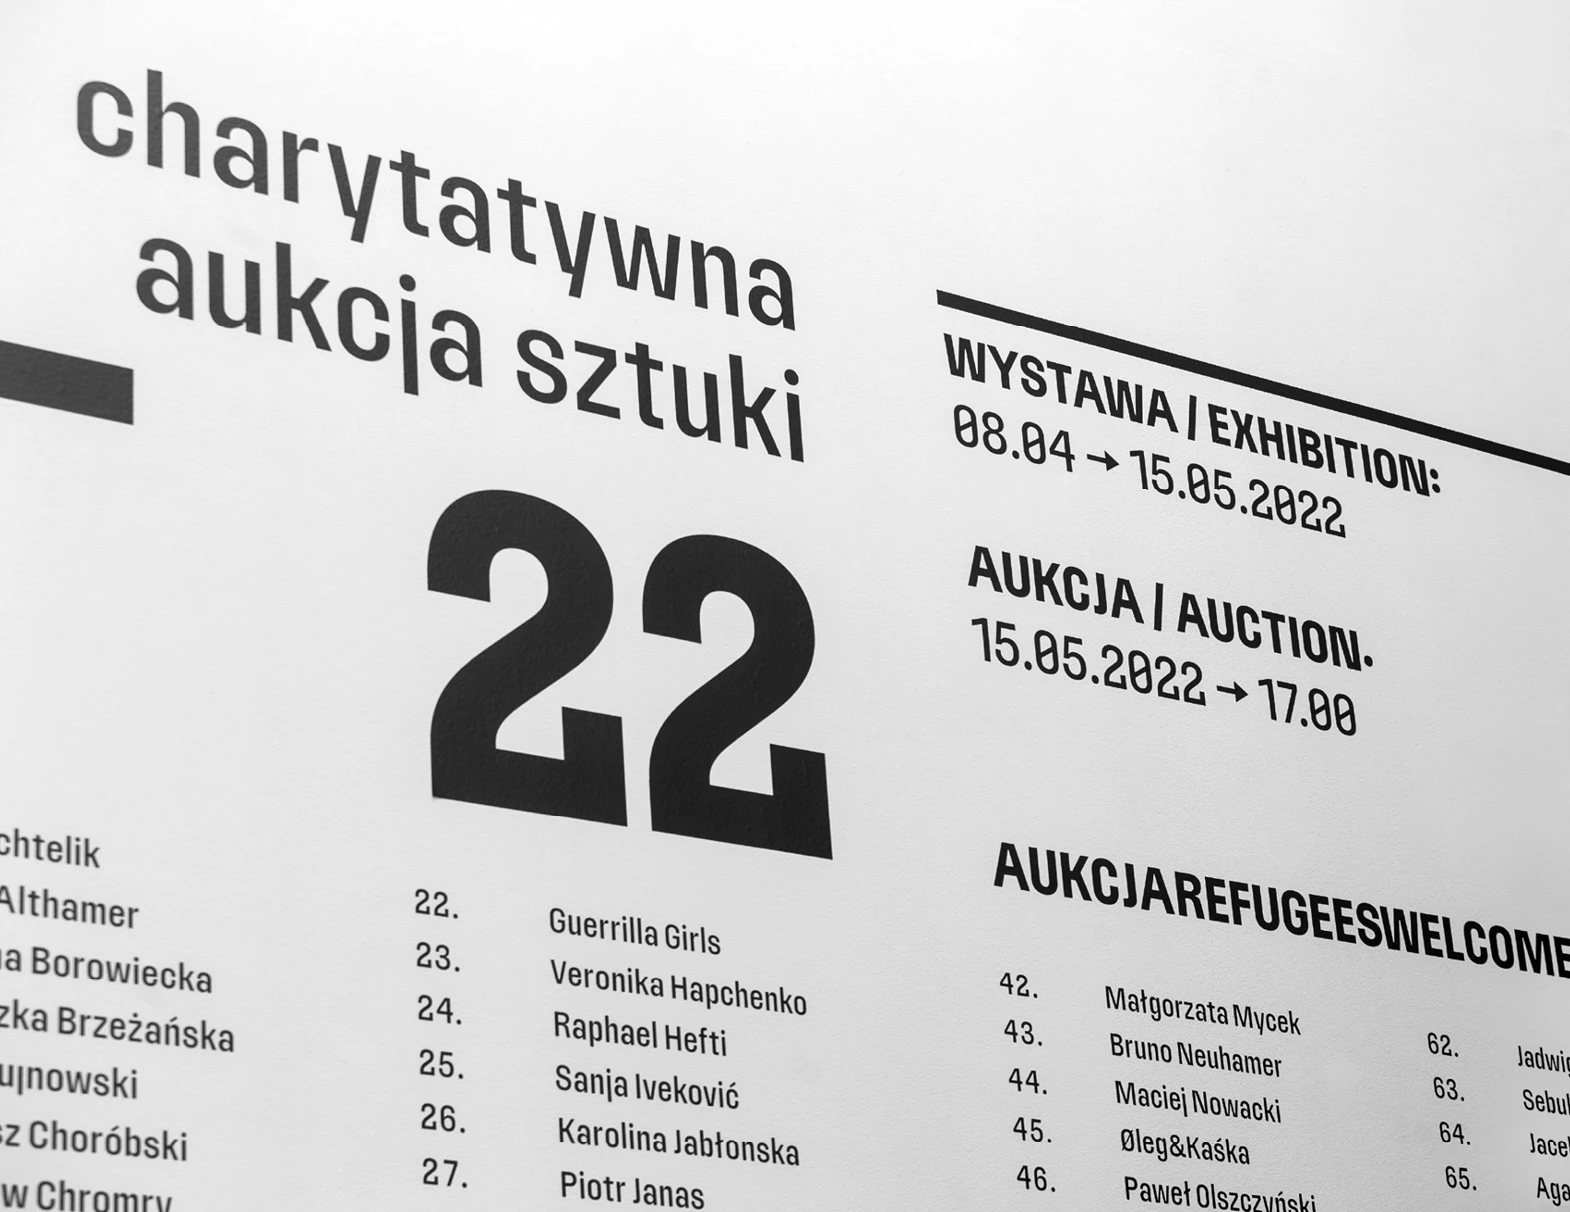 Charytatywna Aukcja Sztuki Refugees Welcome 2022